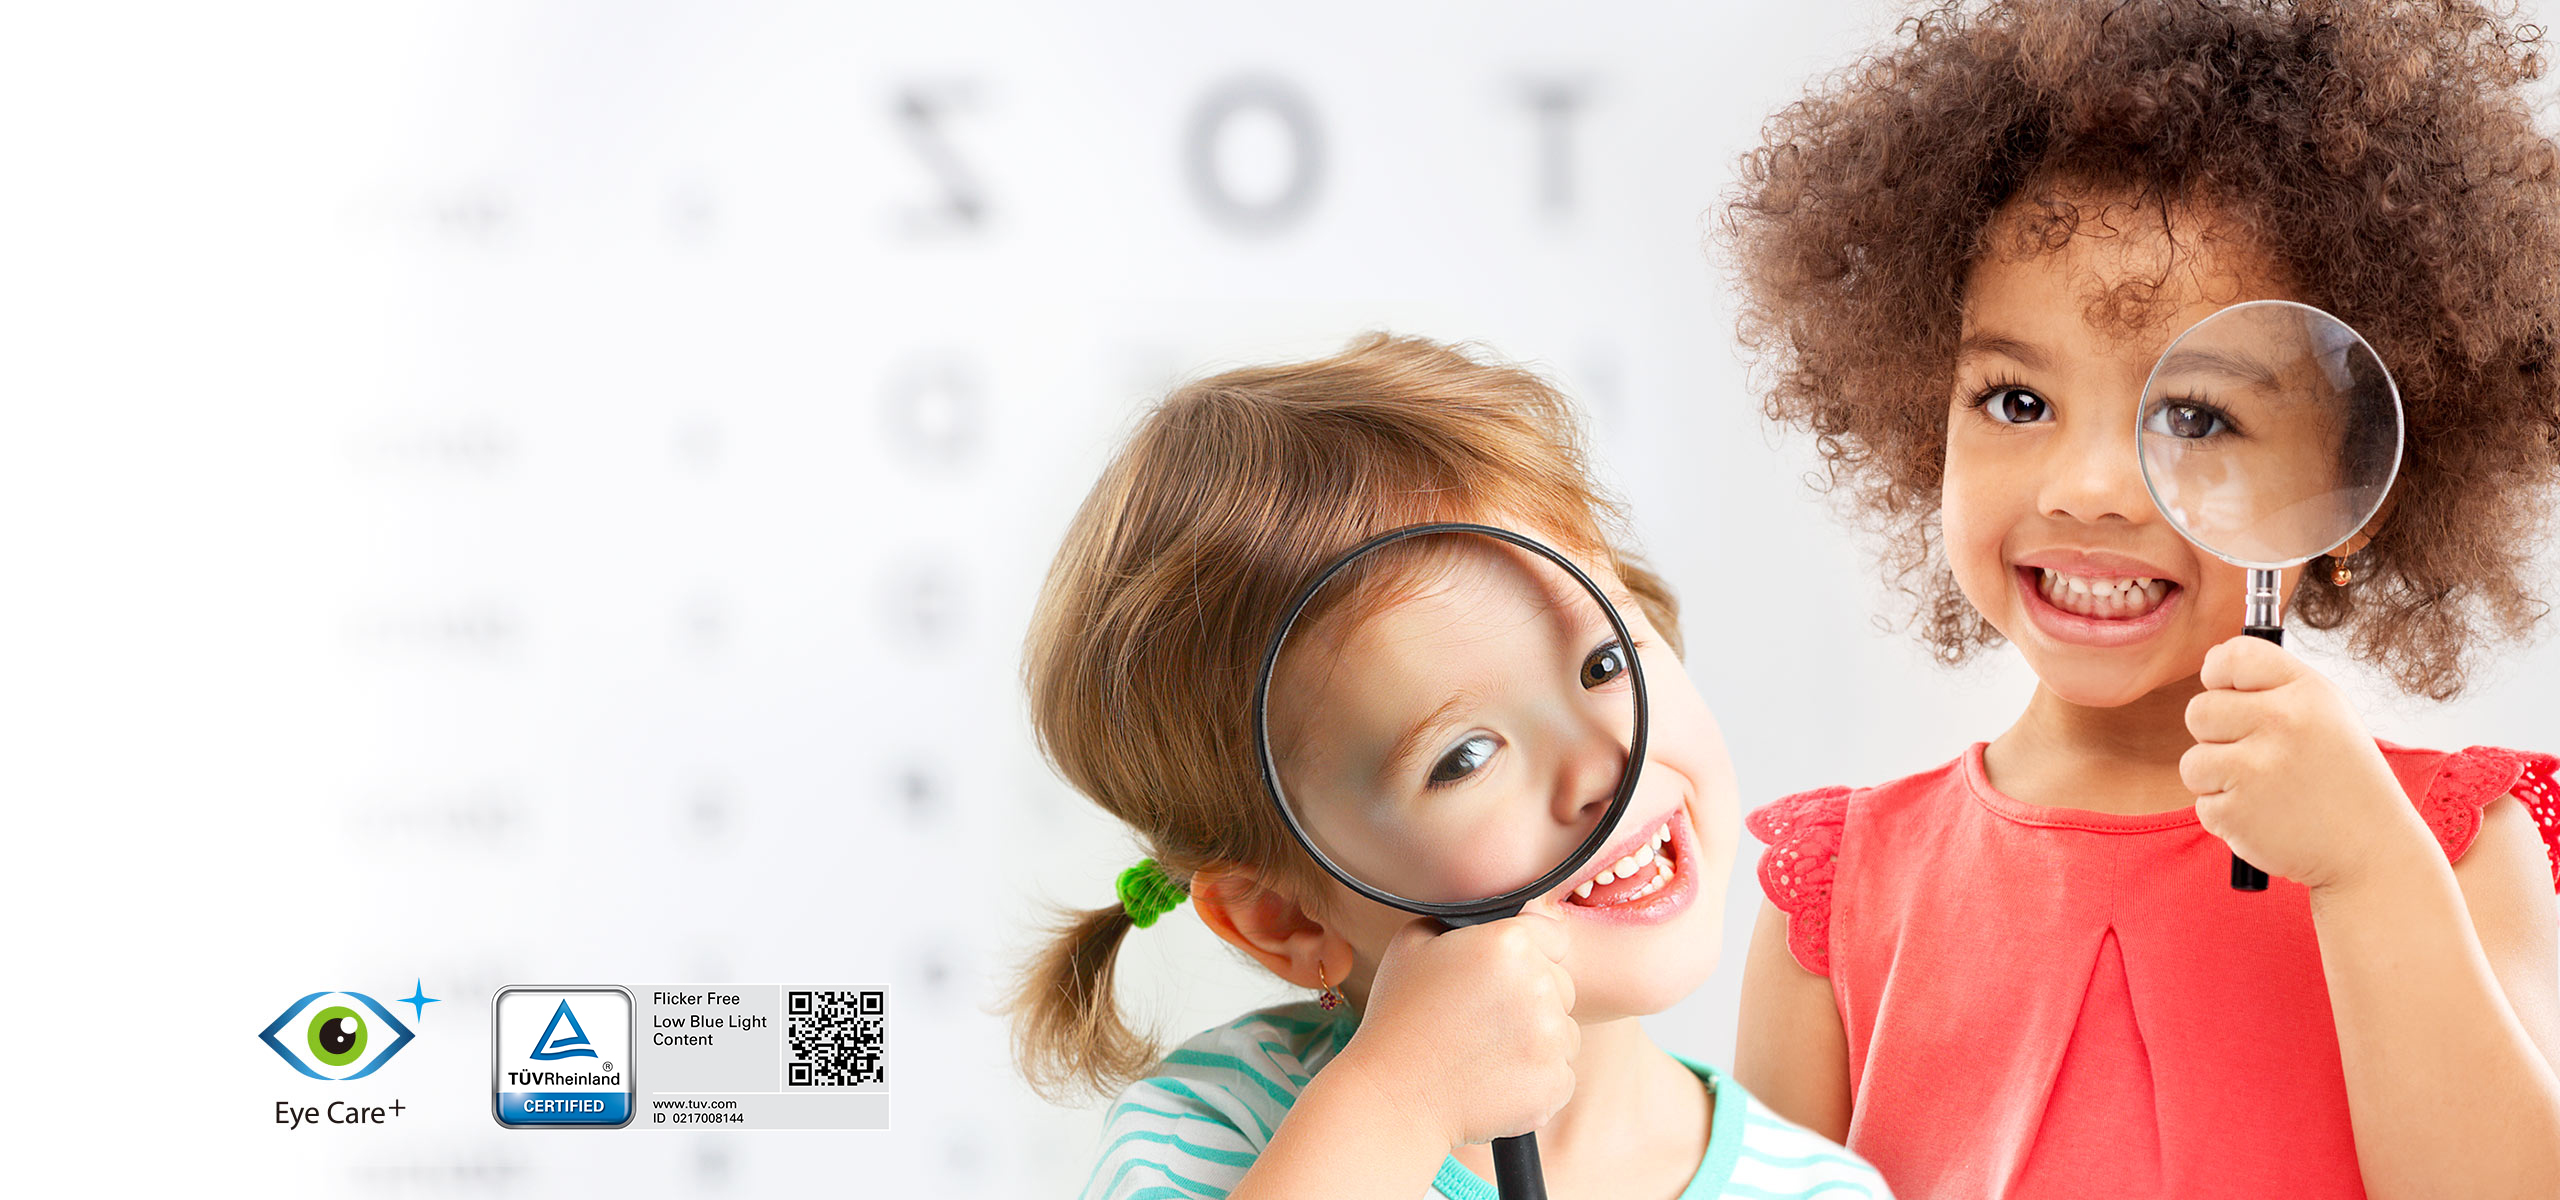 Chroń swoje oczy dzięki technologii Eye Care+